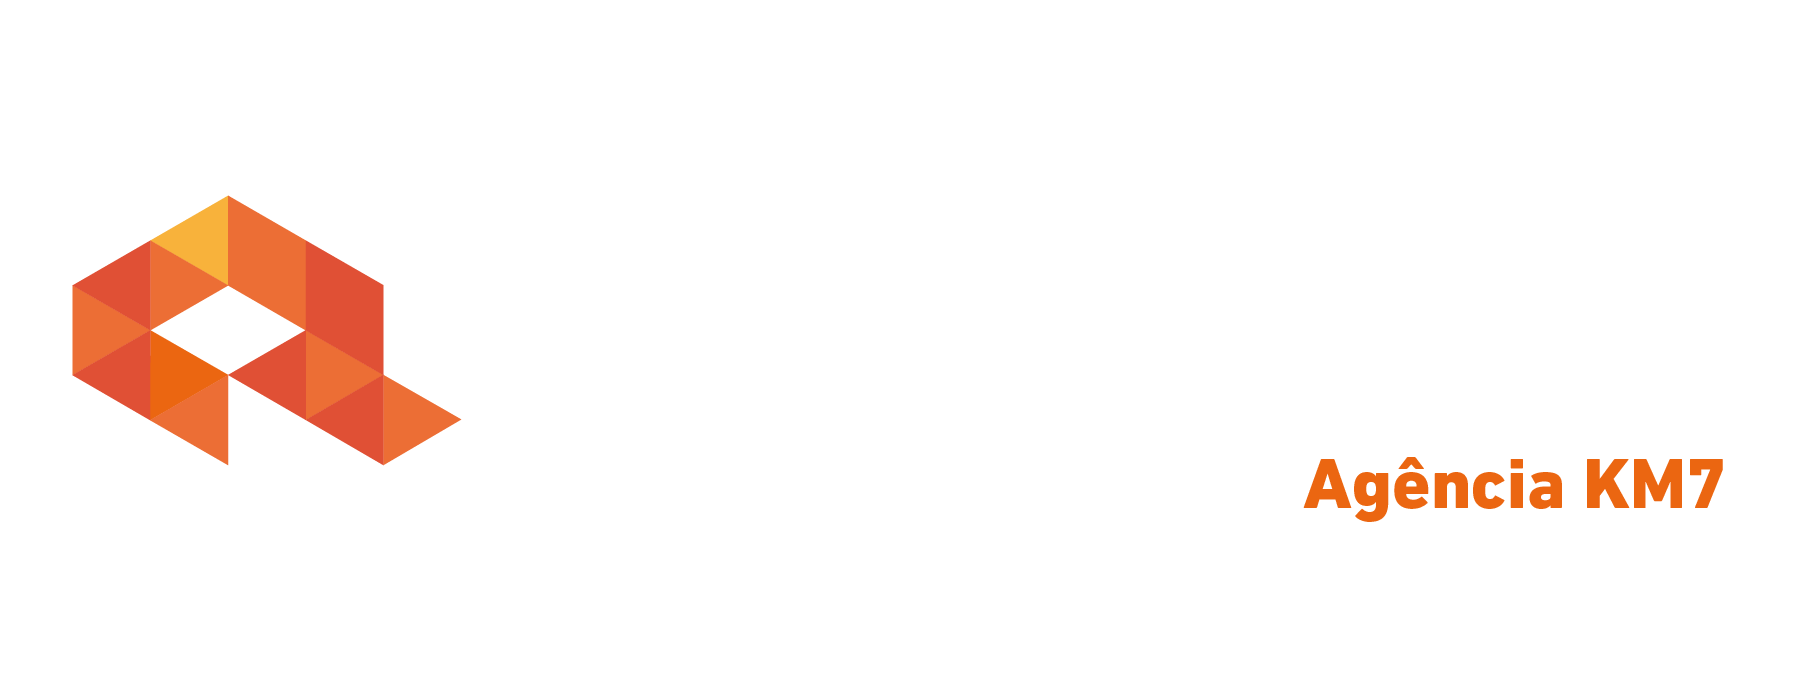 Logo crédito real Crédito Real Km7